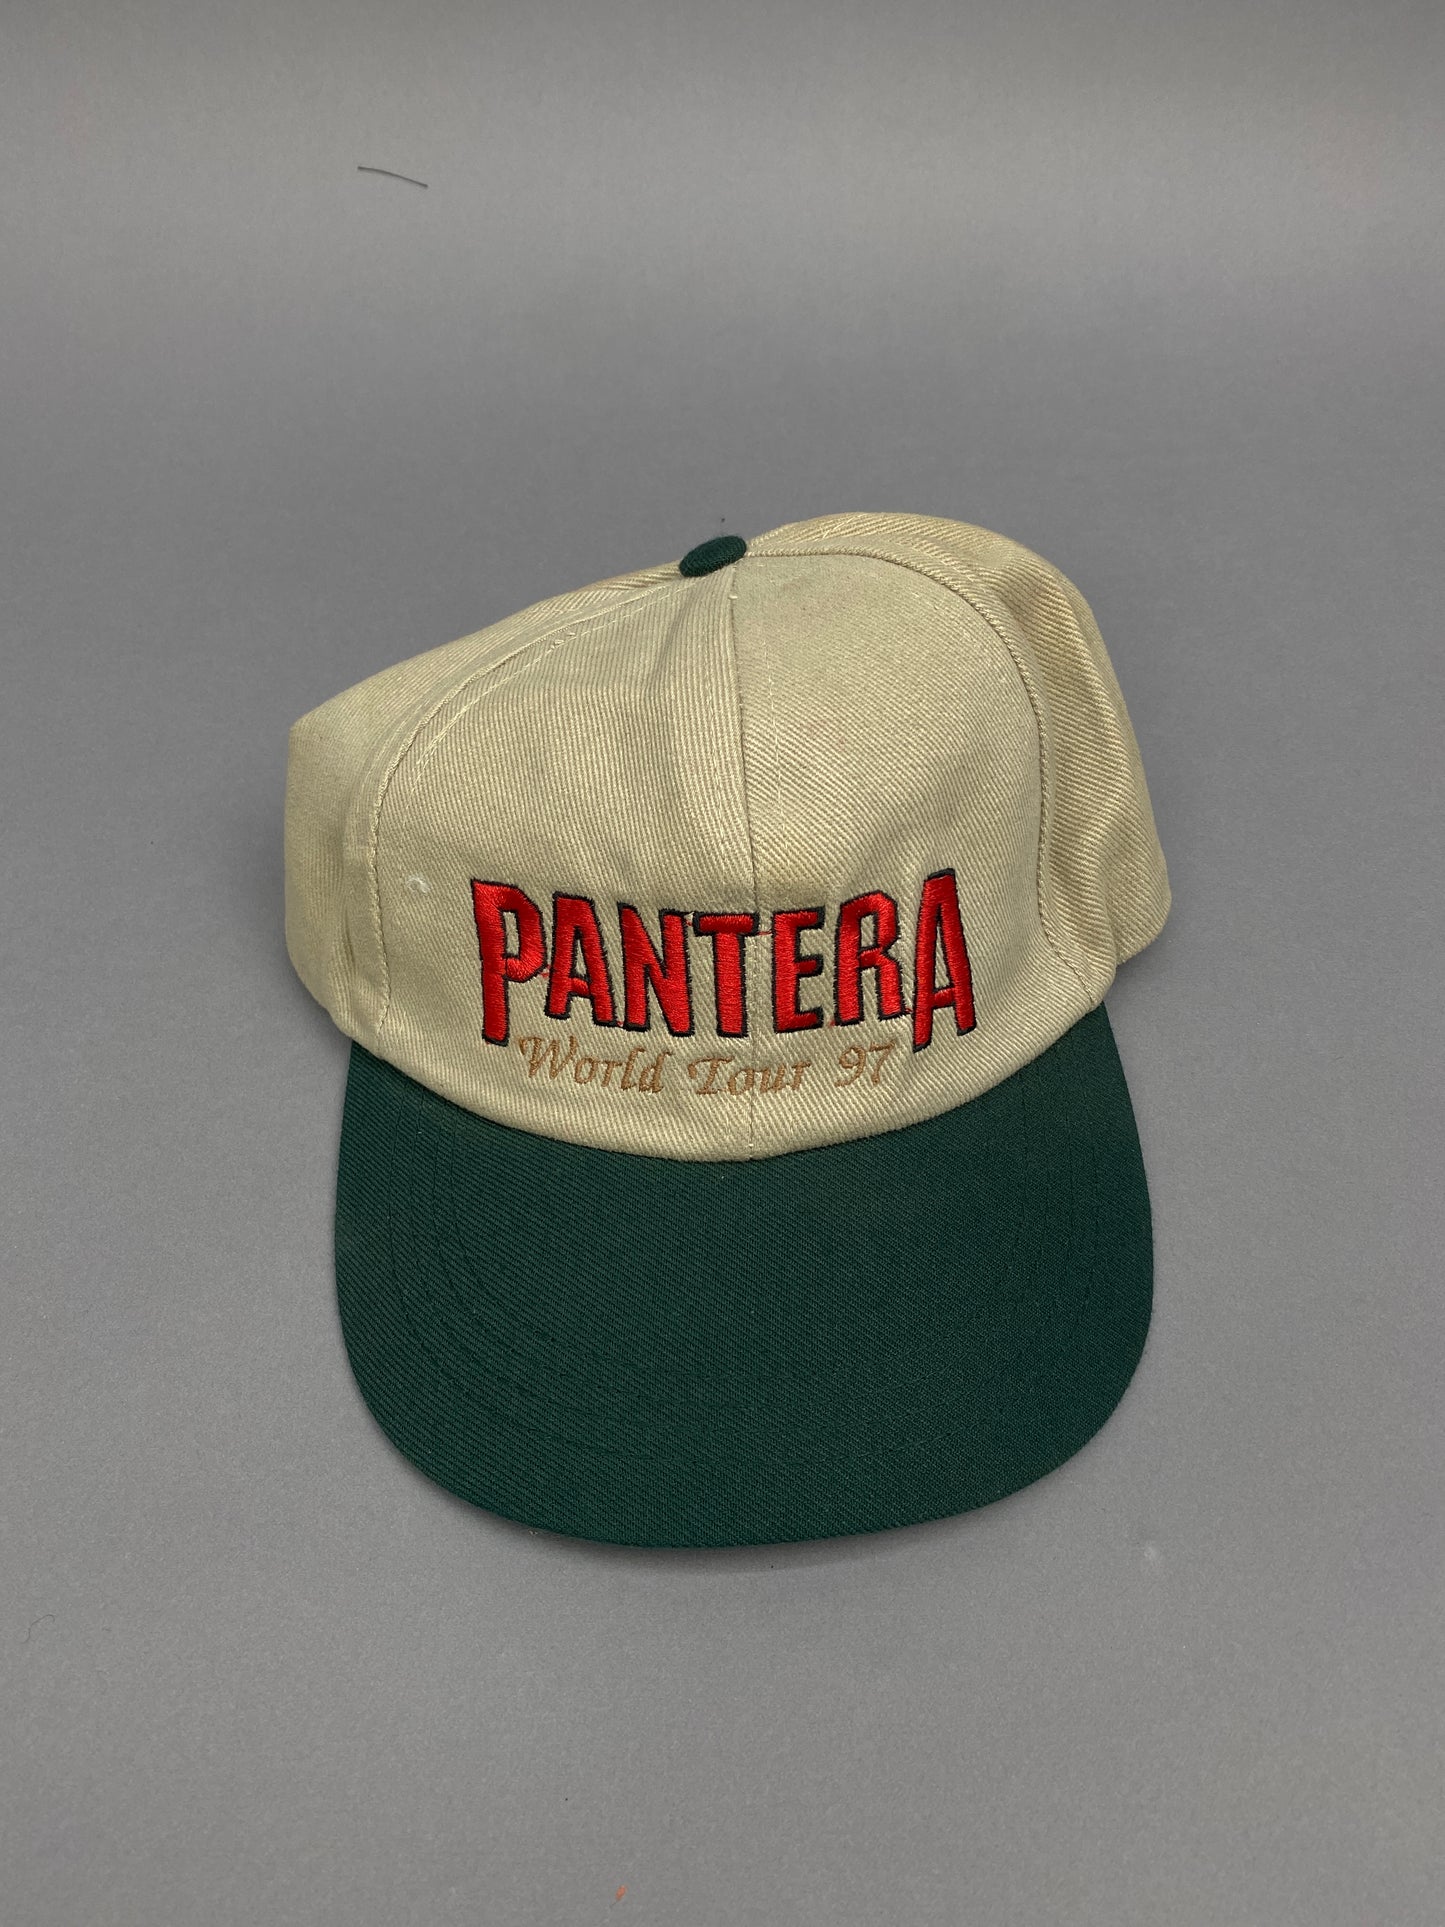 Panther 1997 Vintage Cap